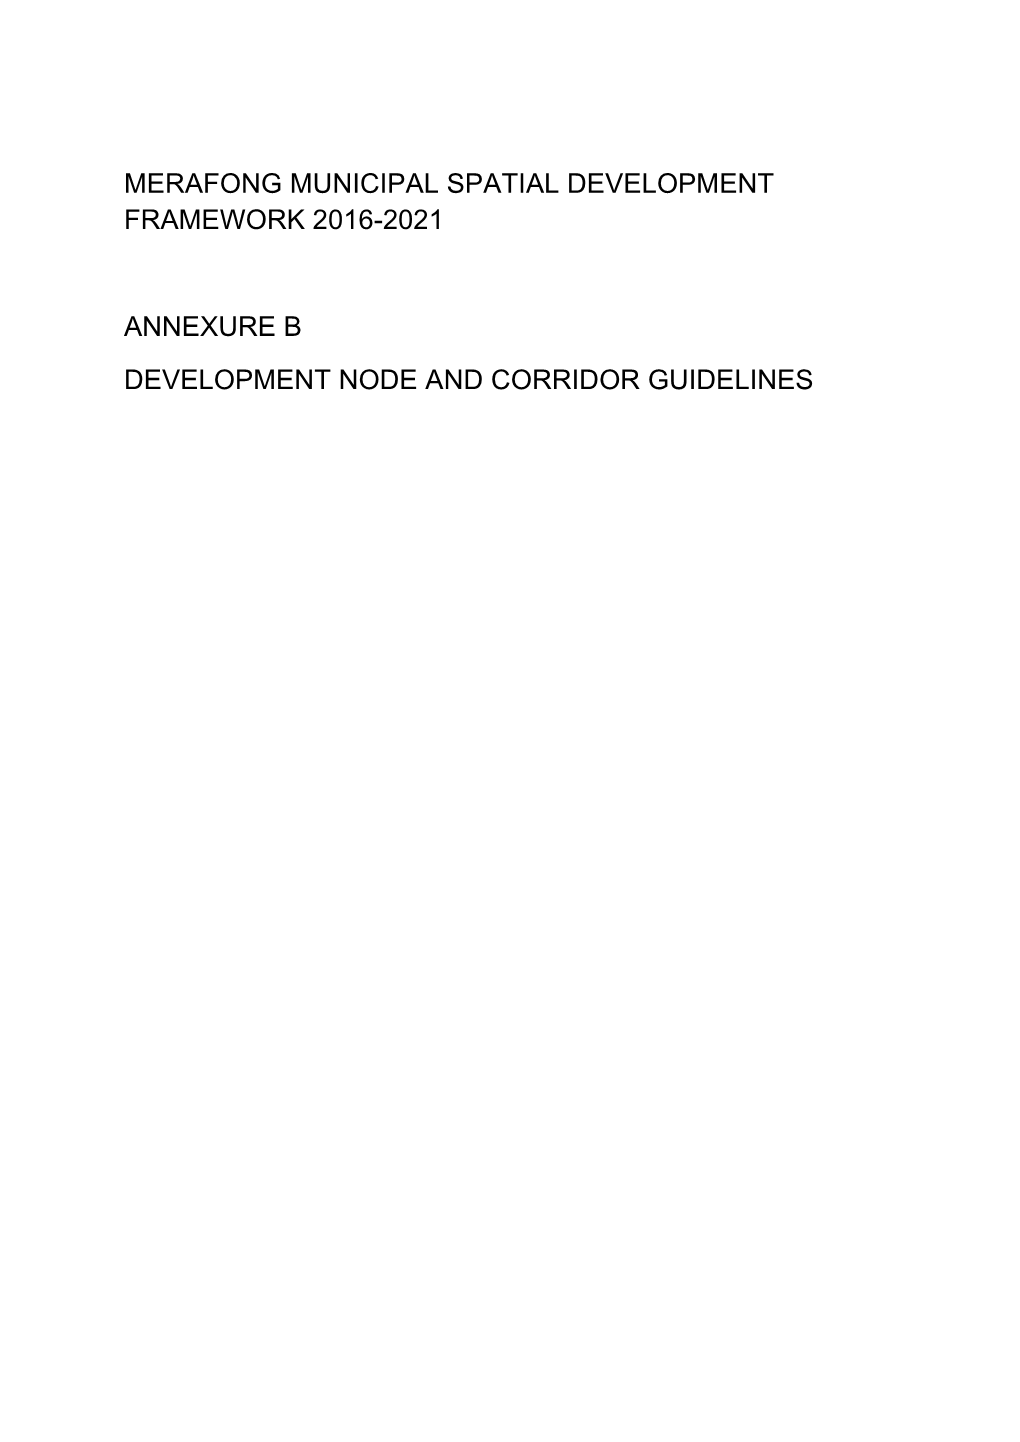 Merafong Municipal Spatial Development Framework 2016-2021